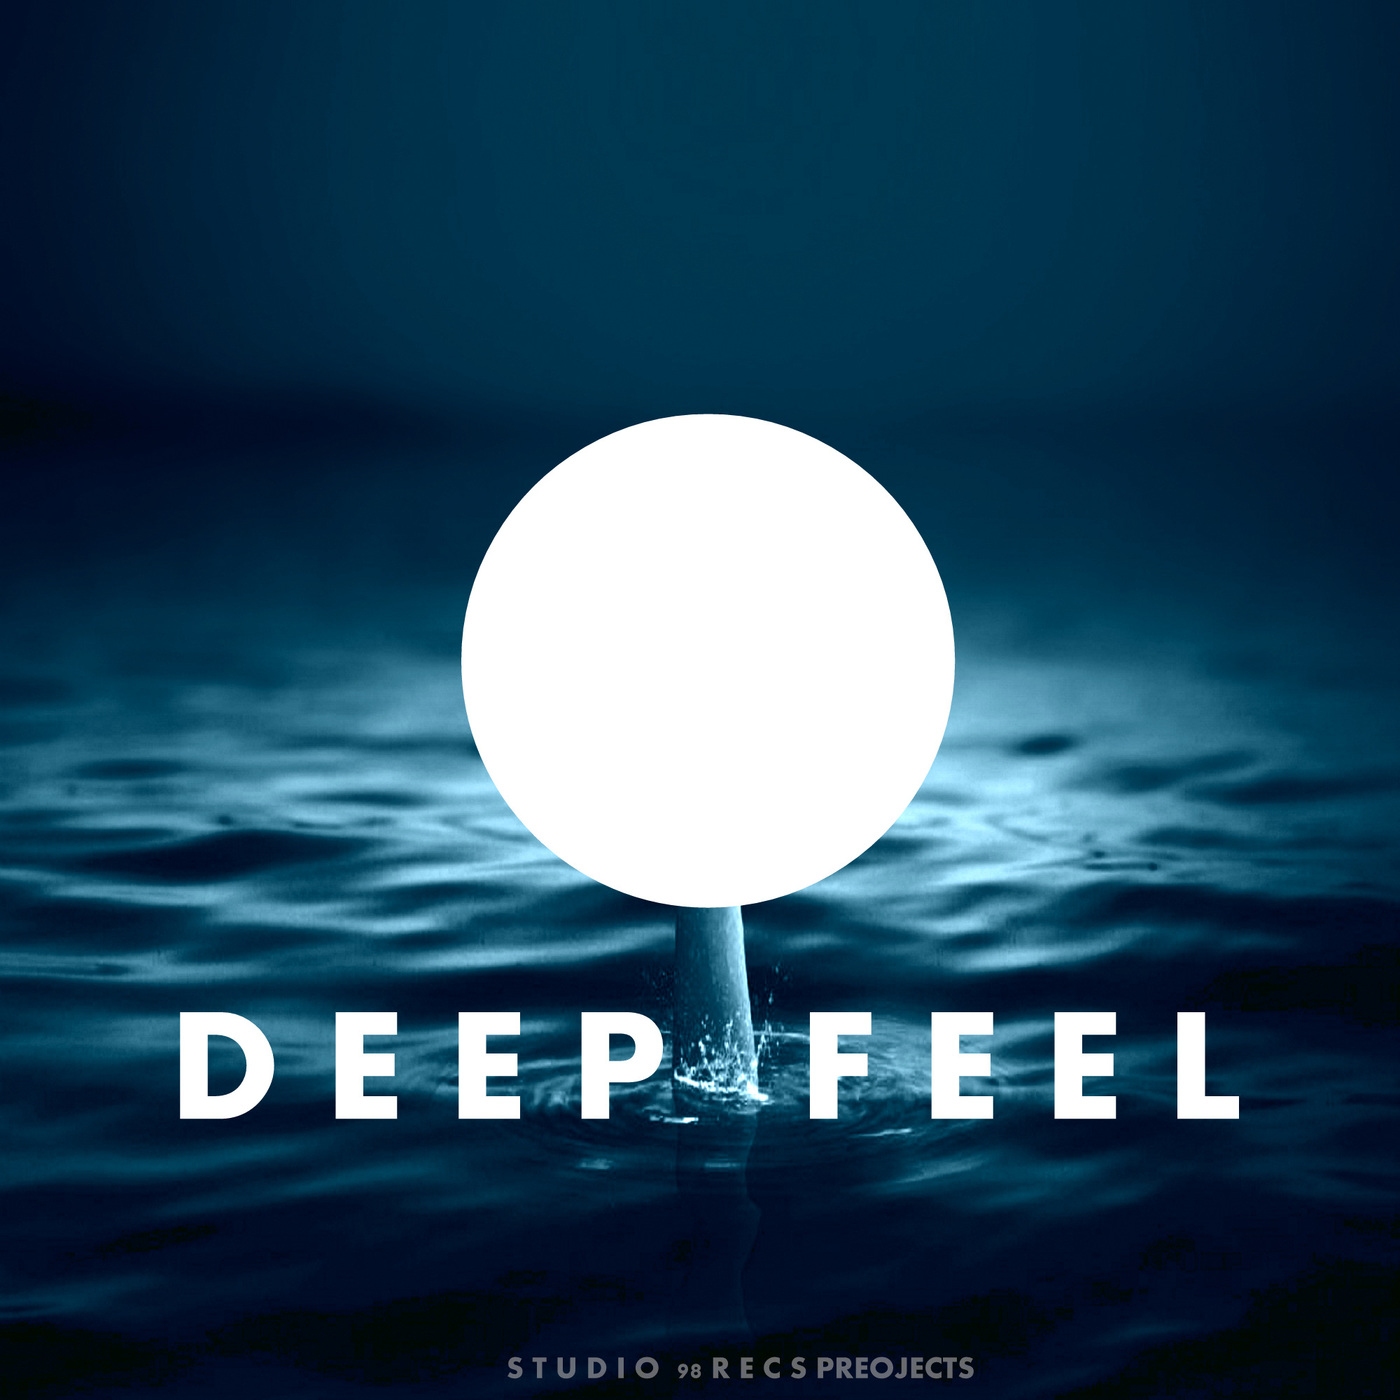 Studio 98 Recs Projects - Deep Feel / Studio 98 Recordings